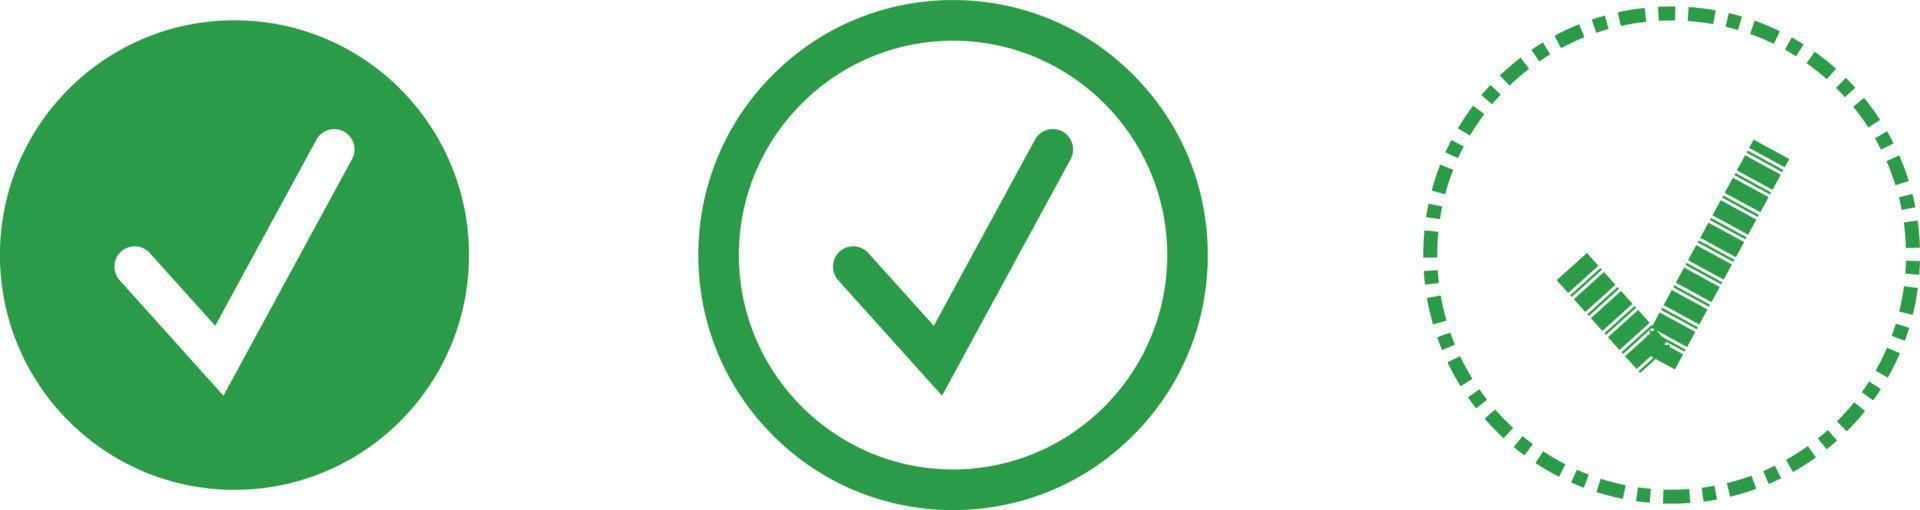 ilustração em vetor etiqueta estrela verde aprovada isolada no fundo branco, ícone vetorial ok. design de ícone de marca de seleção. vetor de confirmação